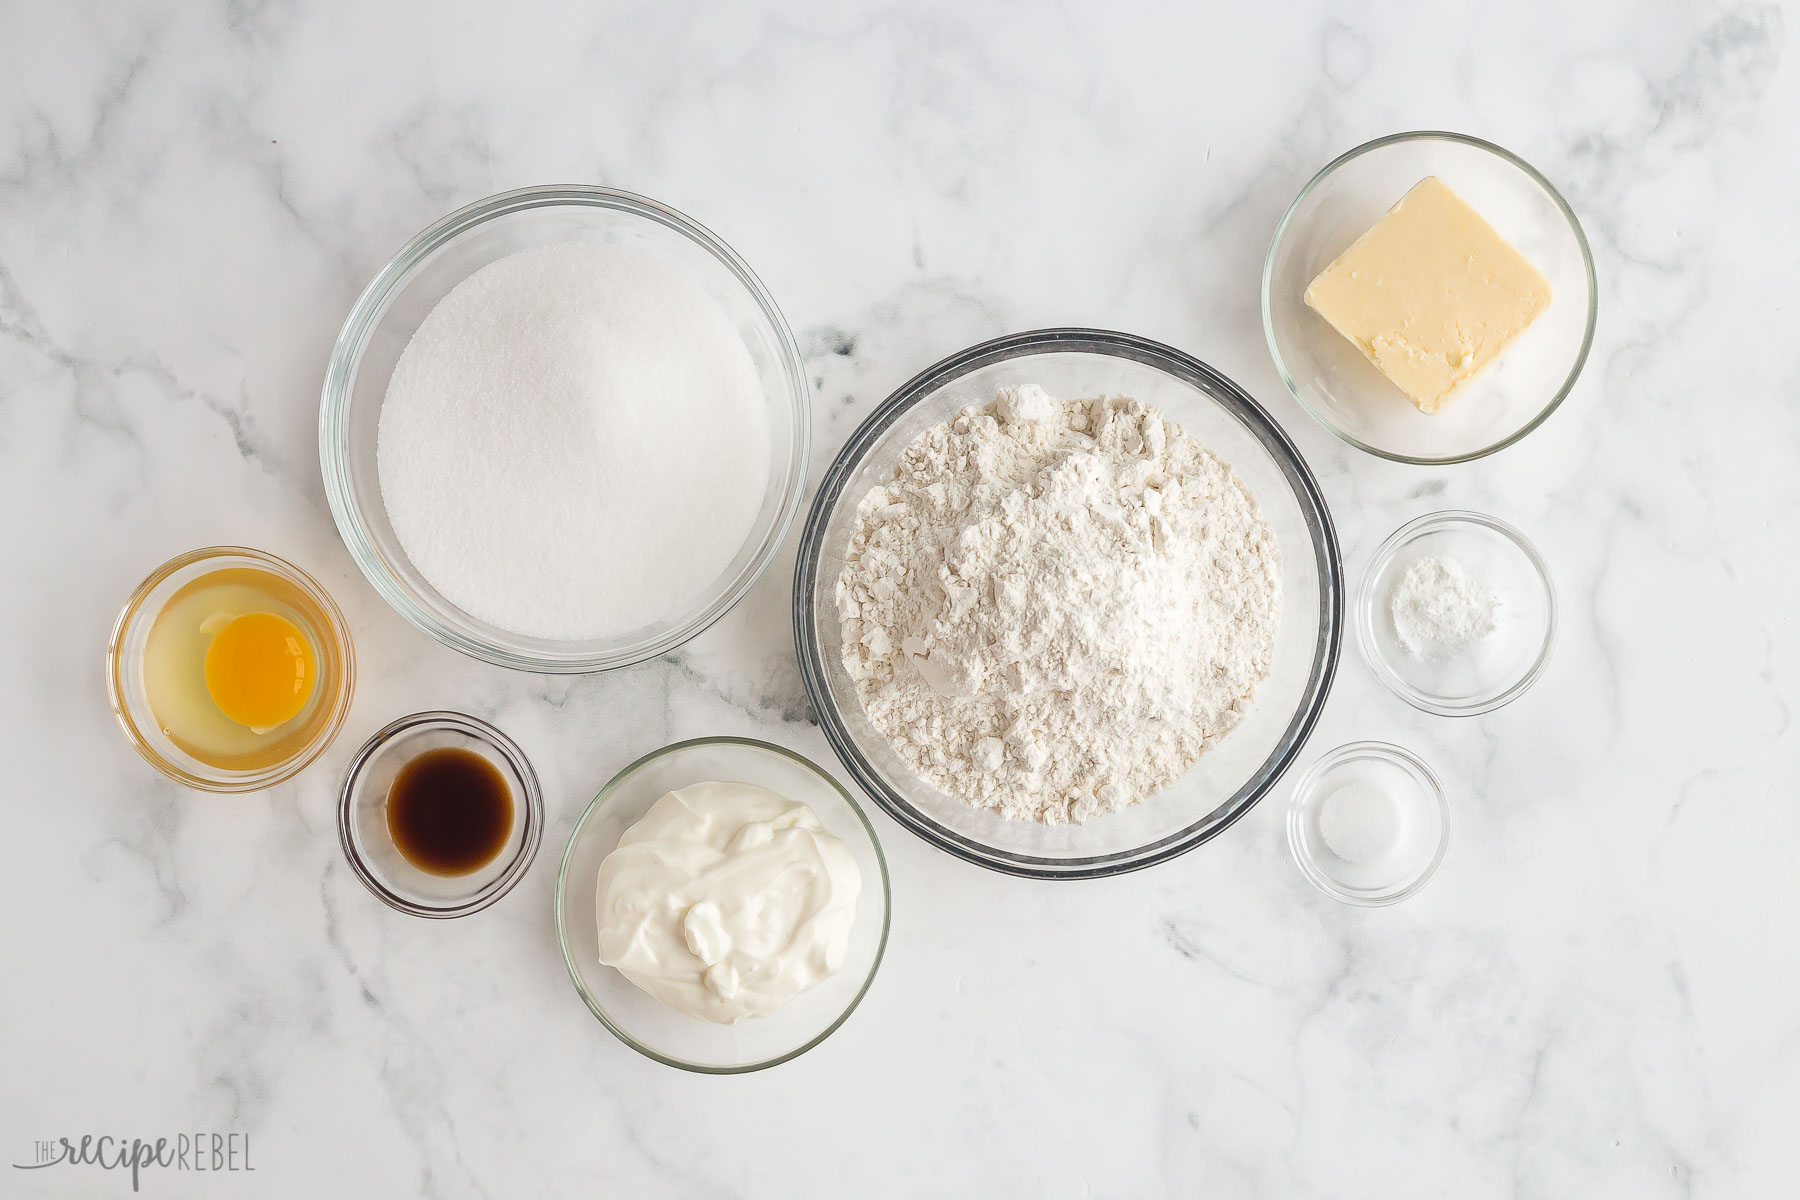 ingredients needed to make sugar cookies